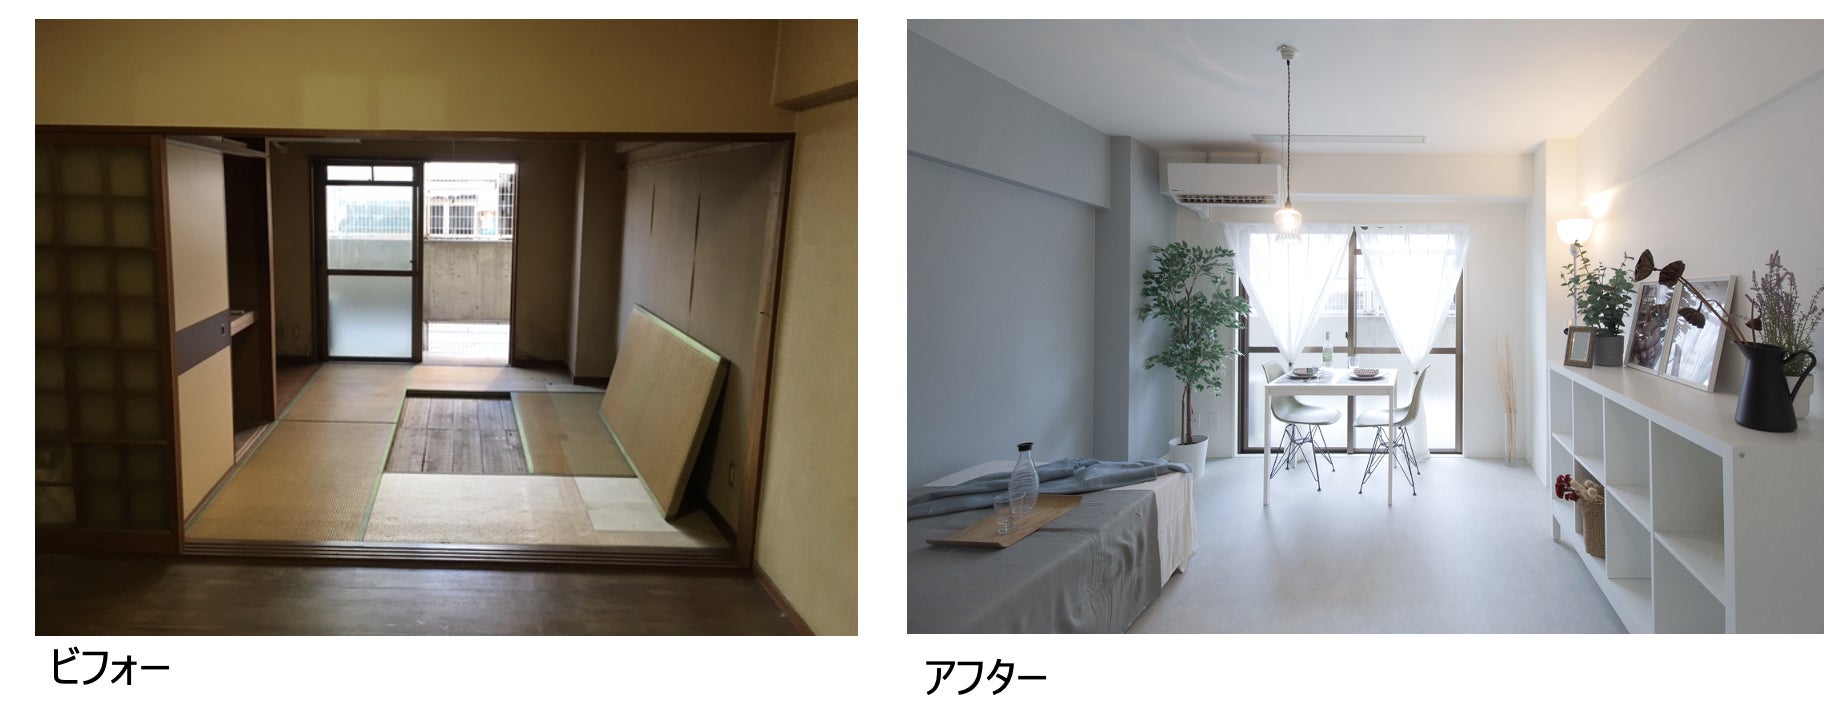 ホームステージングの効果を実例で競う日本唯一のイベント「第7回ホームステージングコンテスト」受賞者決定のサブ画像9